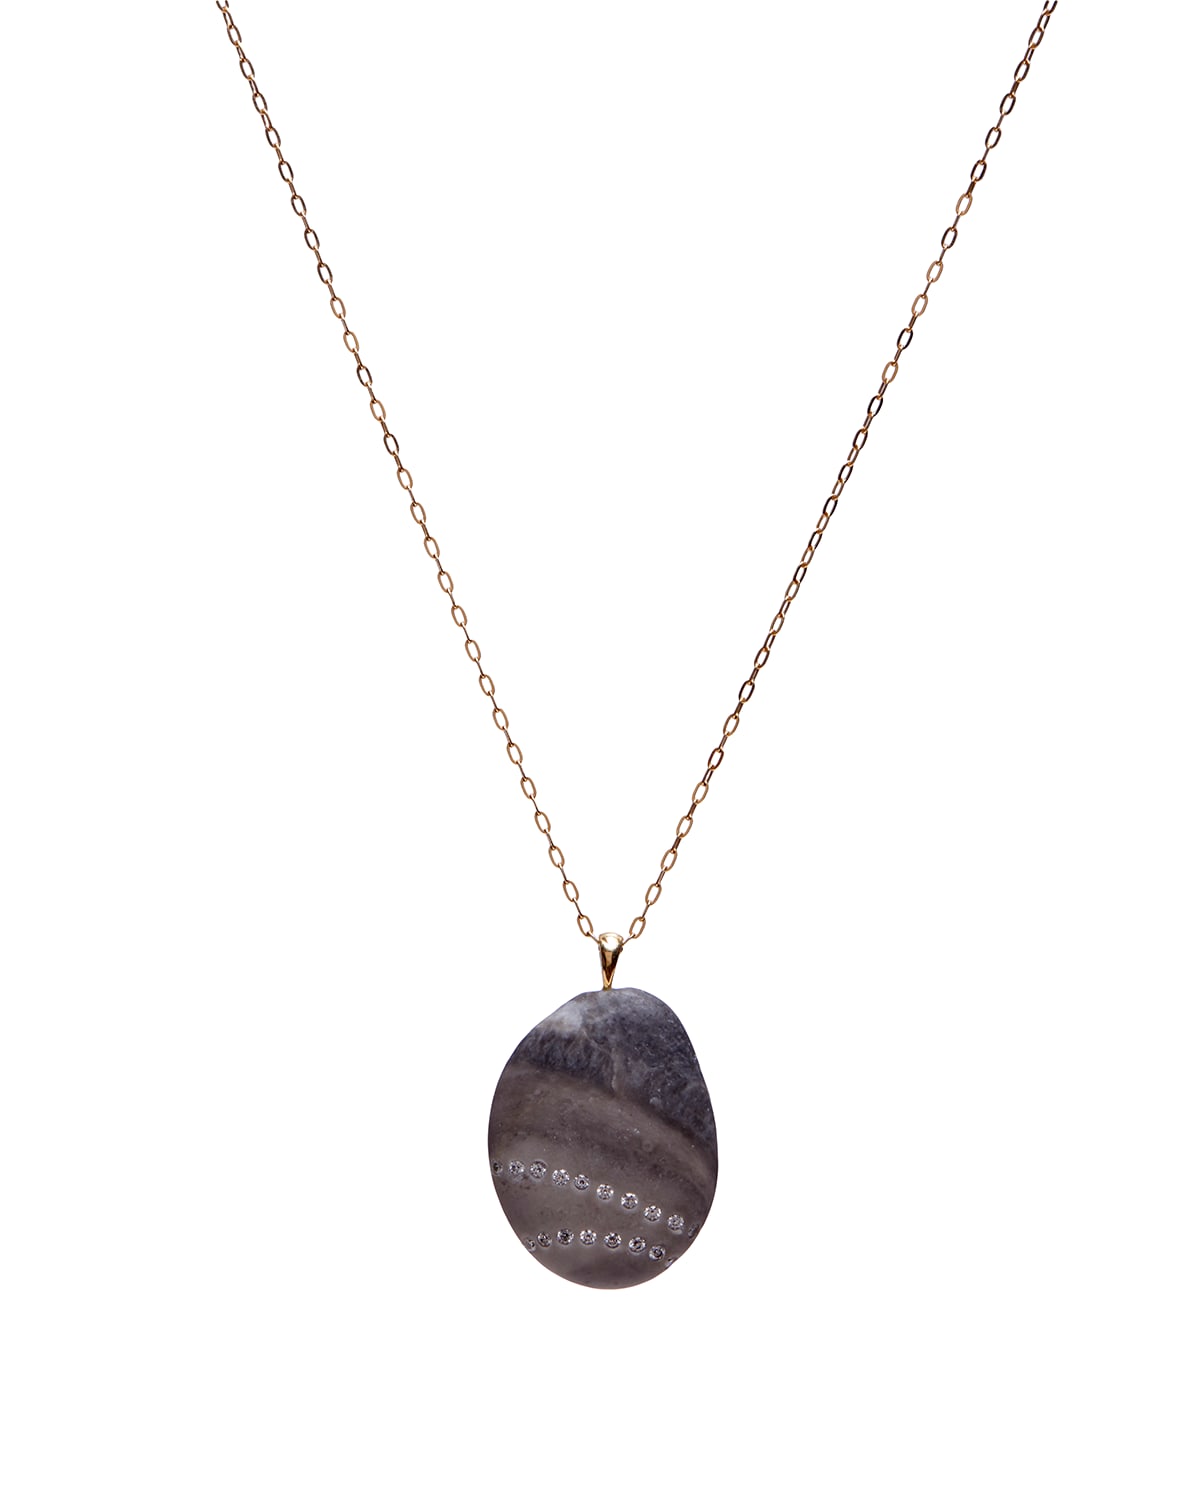 CVC Stones 18k Gold Oval Stray Necklace - One of a Kind, 18"